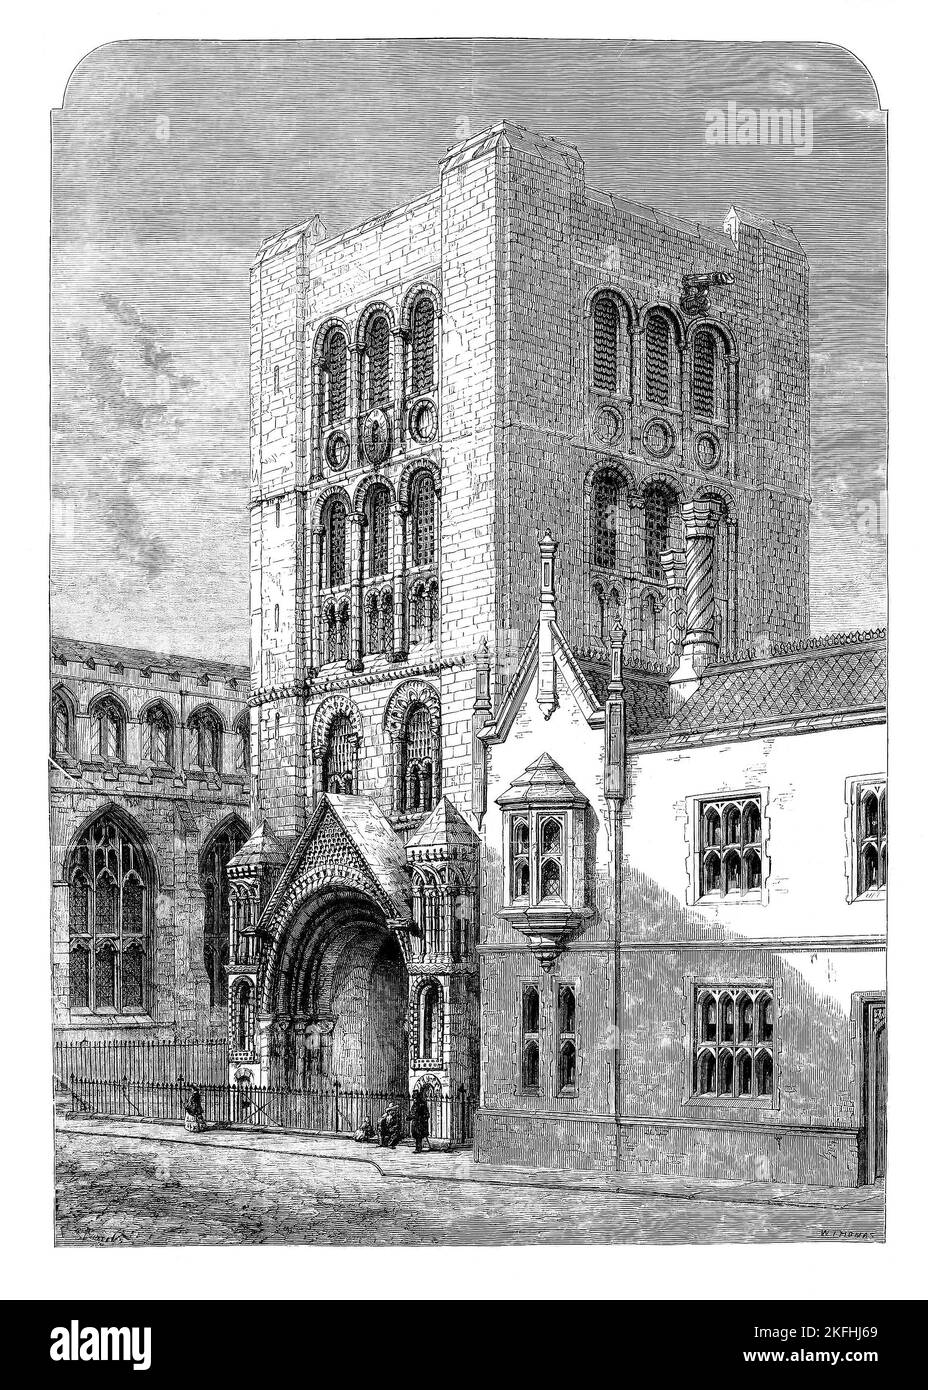 Der Norman Tower, auch bekannt als St. James' Gate, ist der freistehende Glockenturm der St. Edmundsbury Cathedral in Bury St. Edmunds, Suffolk, England. Ursprünglich im frühen 12.. Jahrhundert als Torhaus der riesigen Abtei von Bury St. Edmunds erbaut, heute in Ruinen; 1860 skizziert, zählt es zu den schönsten normannischen Bauten in East Anglia. Stockfoto